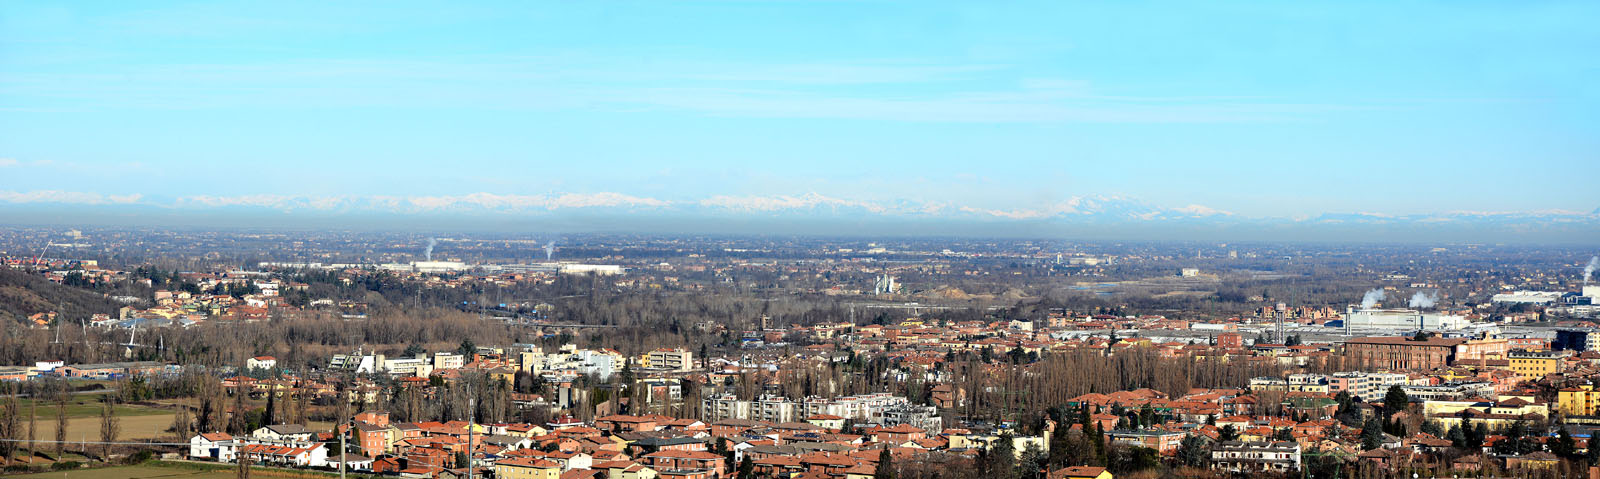 Vista dal Monte delle tre croci, Scandiano (RE)